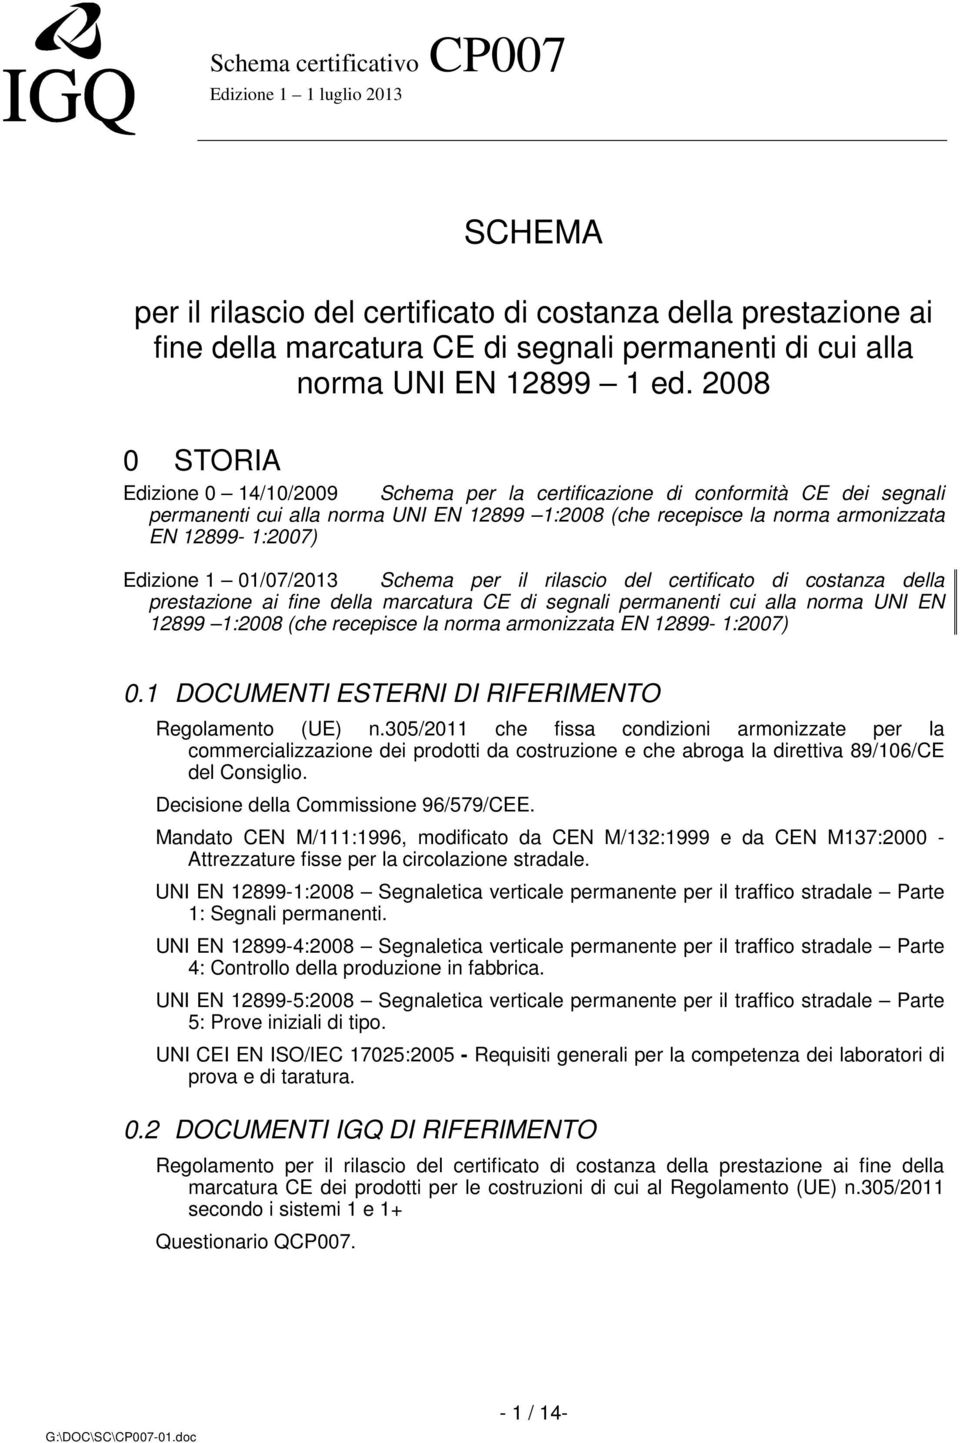 Edizione 1 01/07/2013 Schema per il rilascio del certificato di costanza della prestazione ai fine della marcatura CE di segnali permanenti cui alla norma UNI EN 12899 1:2008 (che recepisce la norma